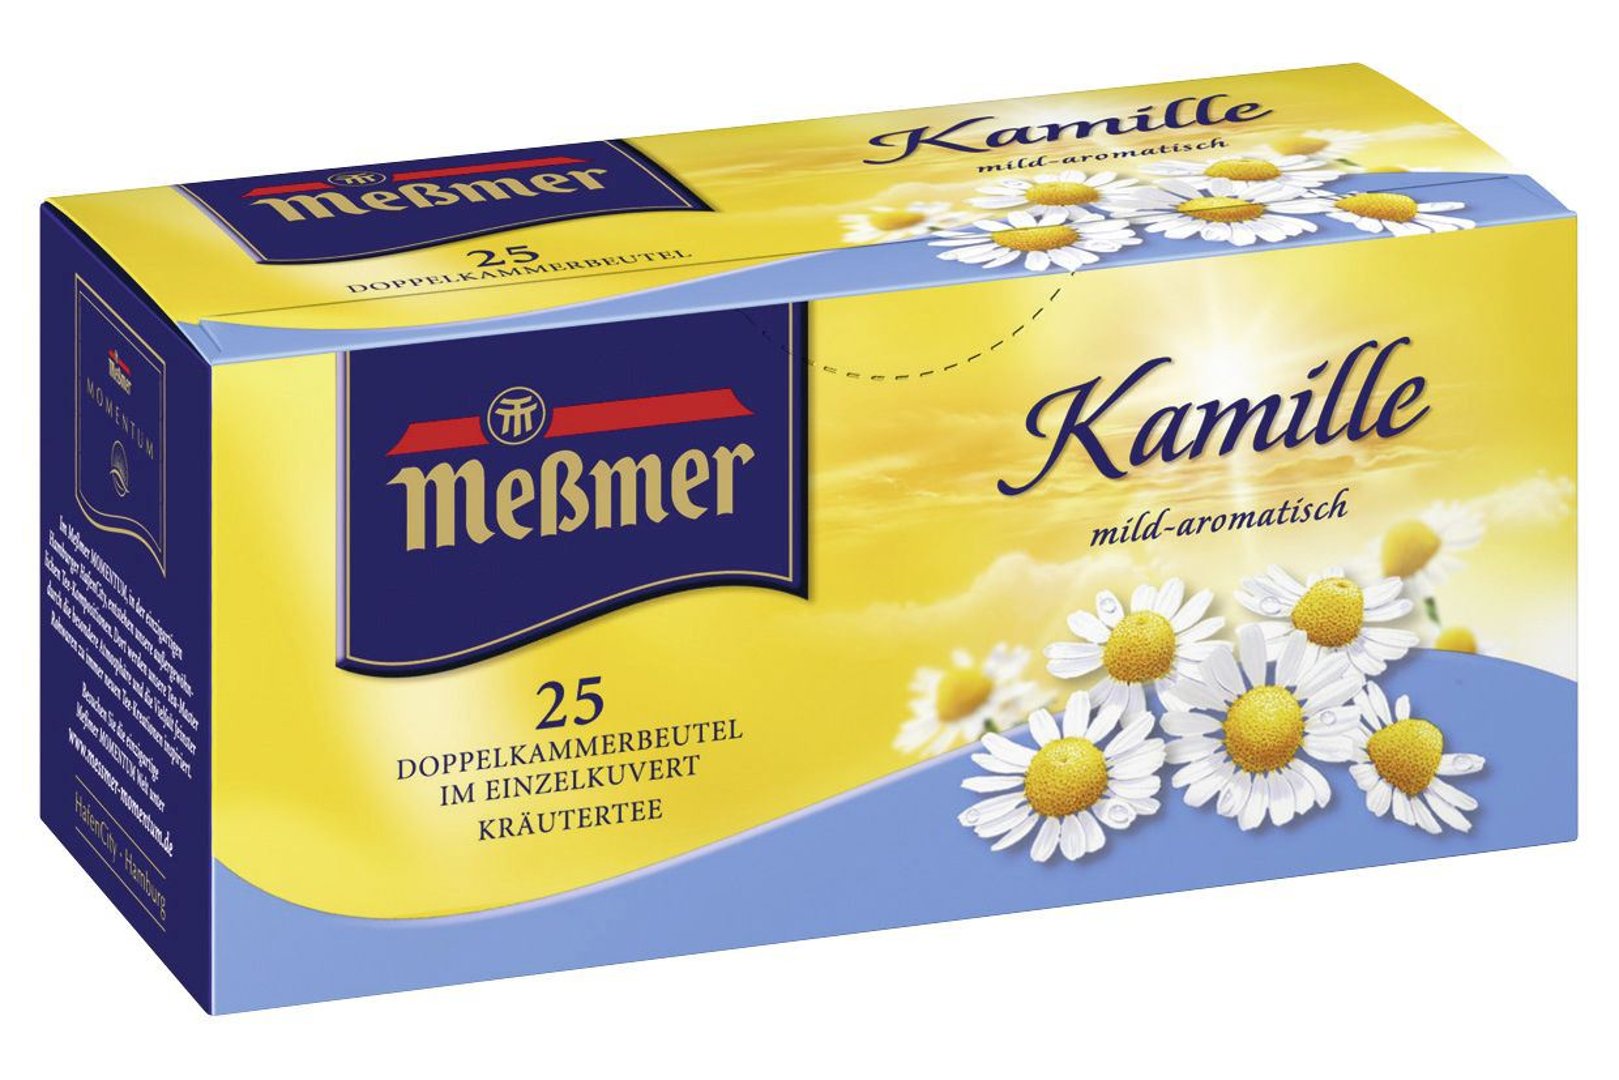 MEßMER - Kräutertee Kamille mild-aromatisch, 25 Teebeutel - 12 x 38 g Karton